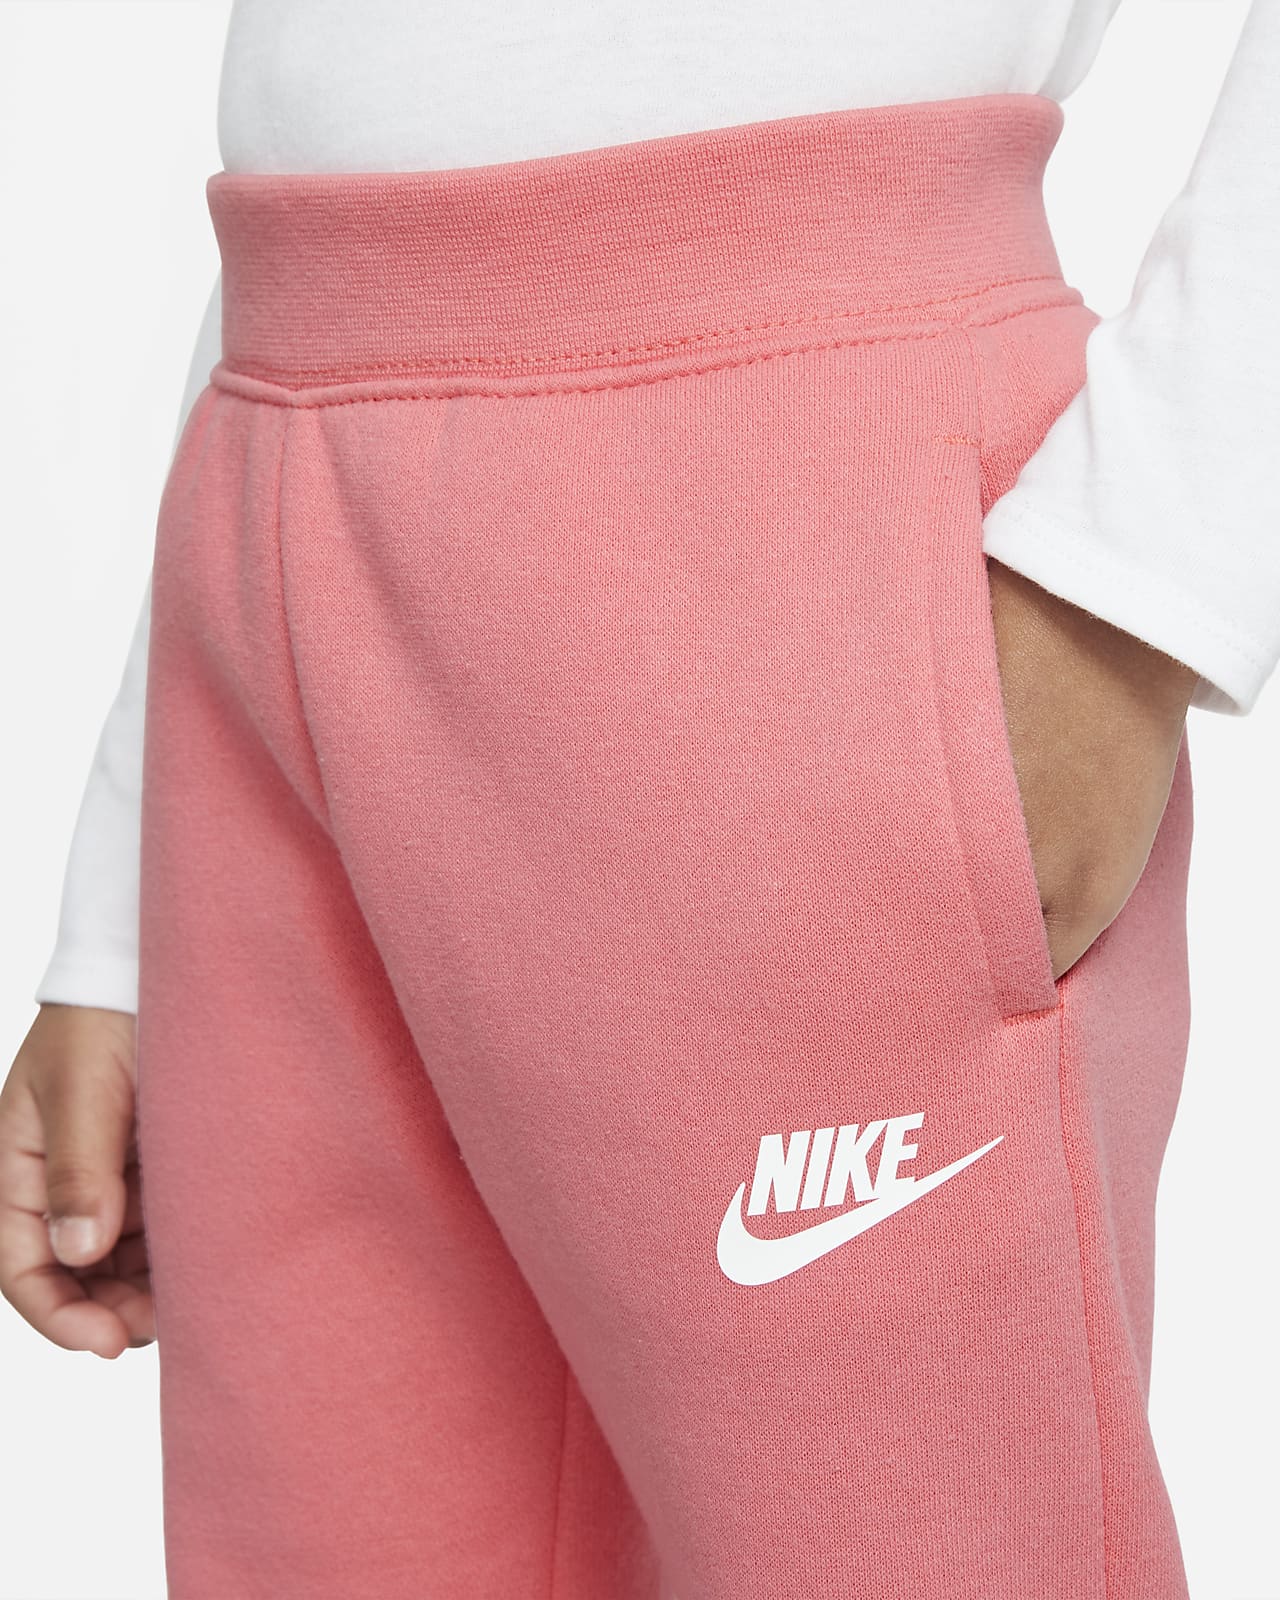 Nike Sportswear POLY SET UNISEX - Tracksuit - black/pink foam